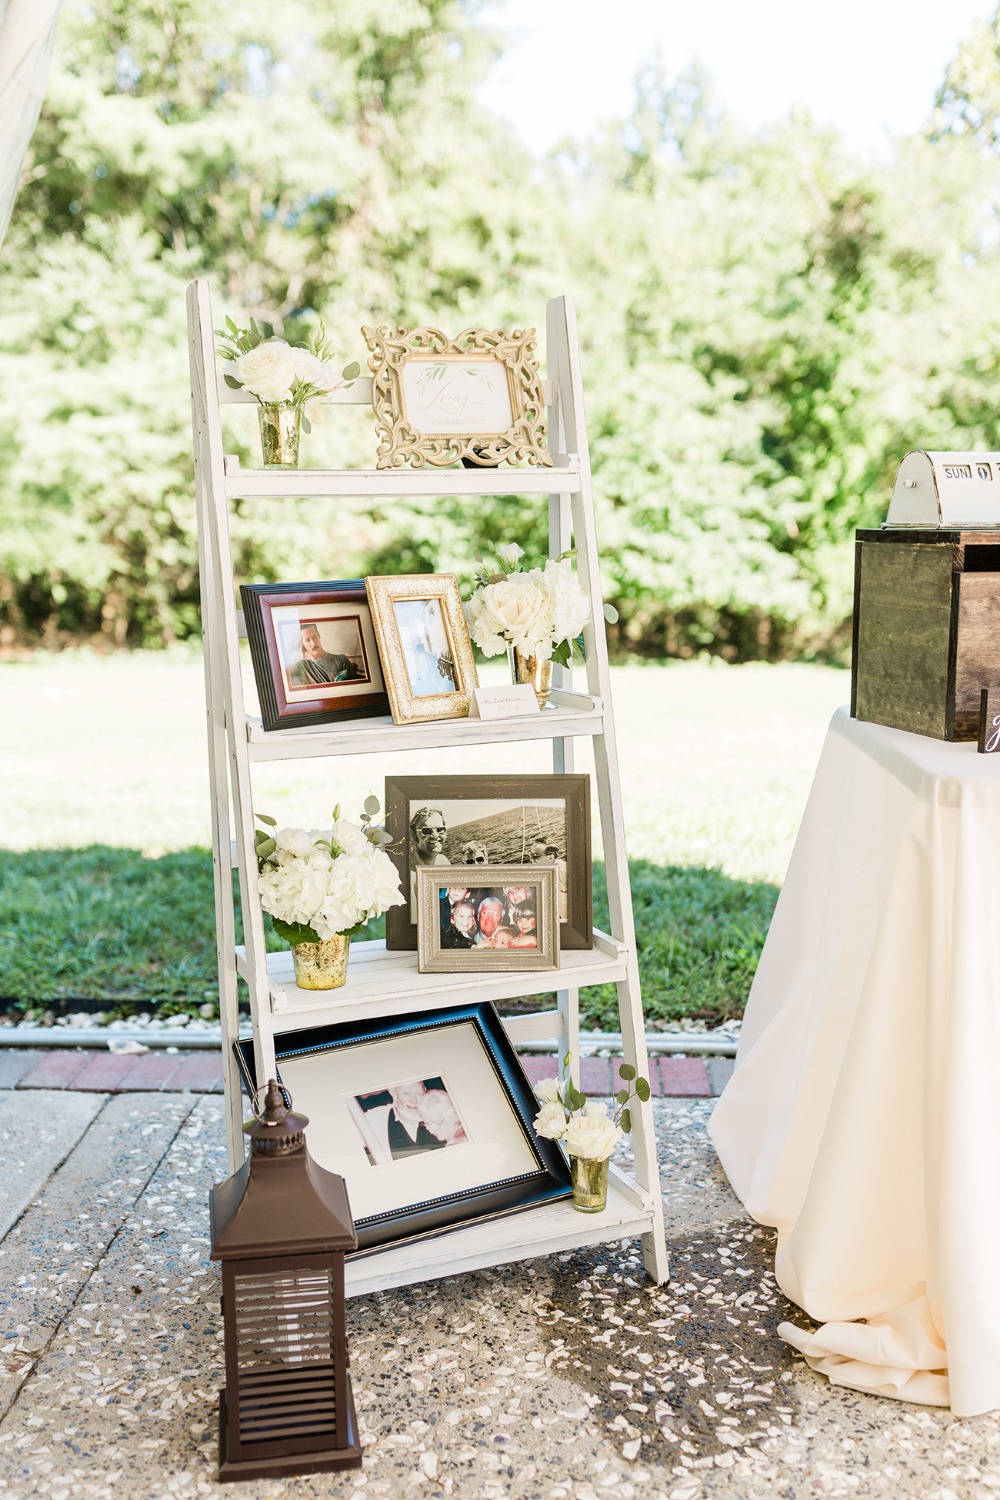 wedding photo display